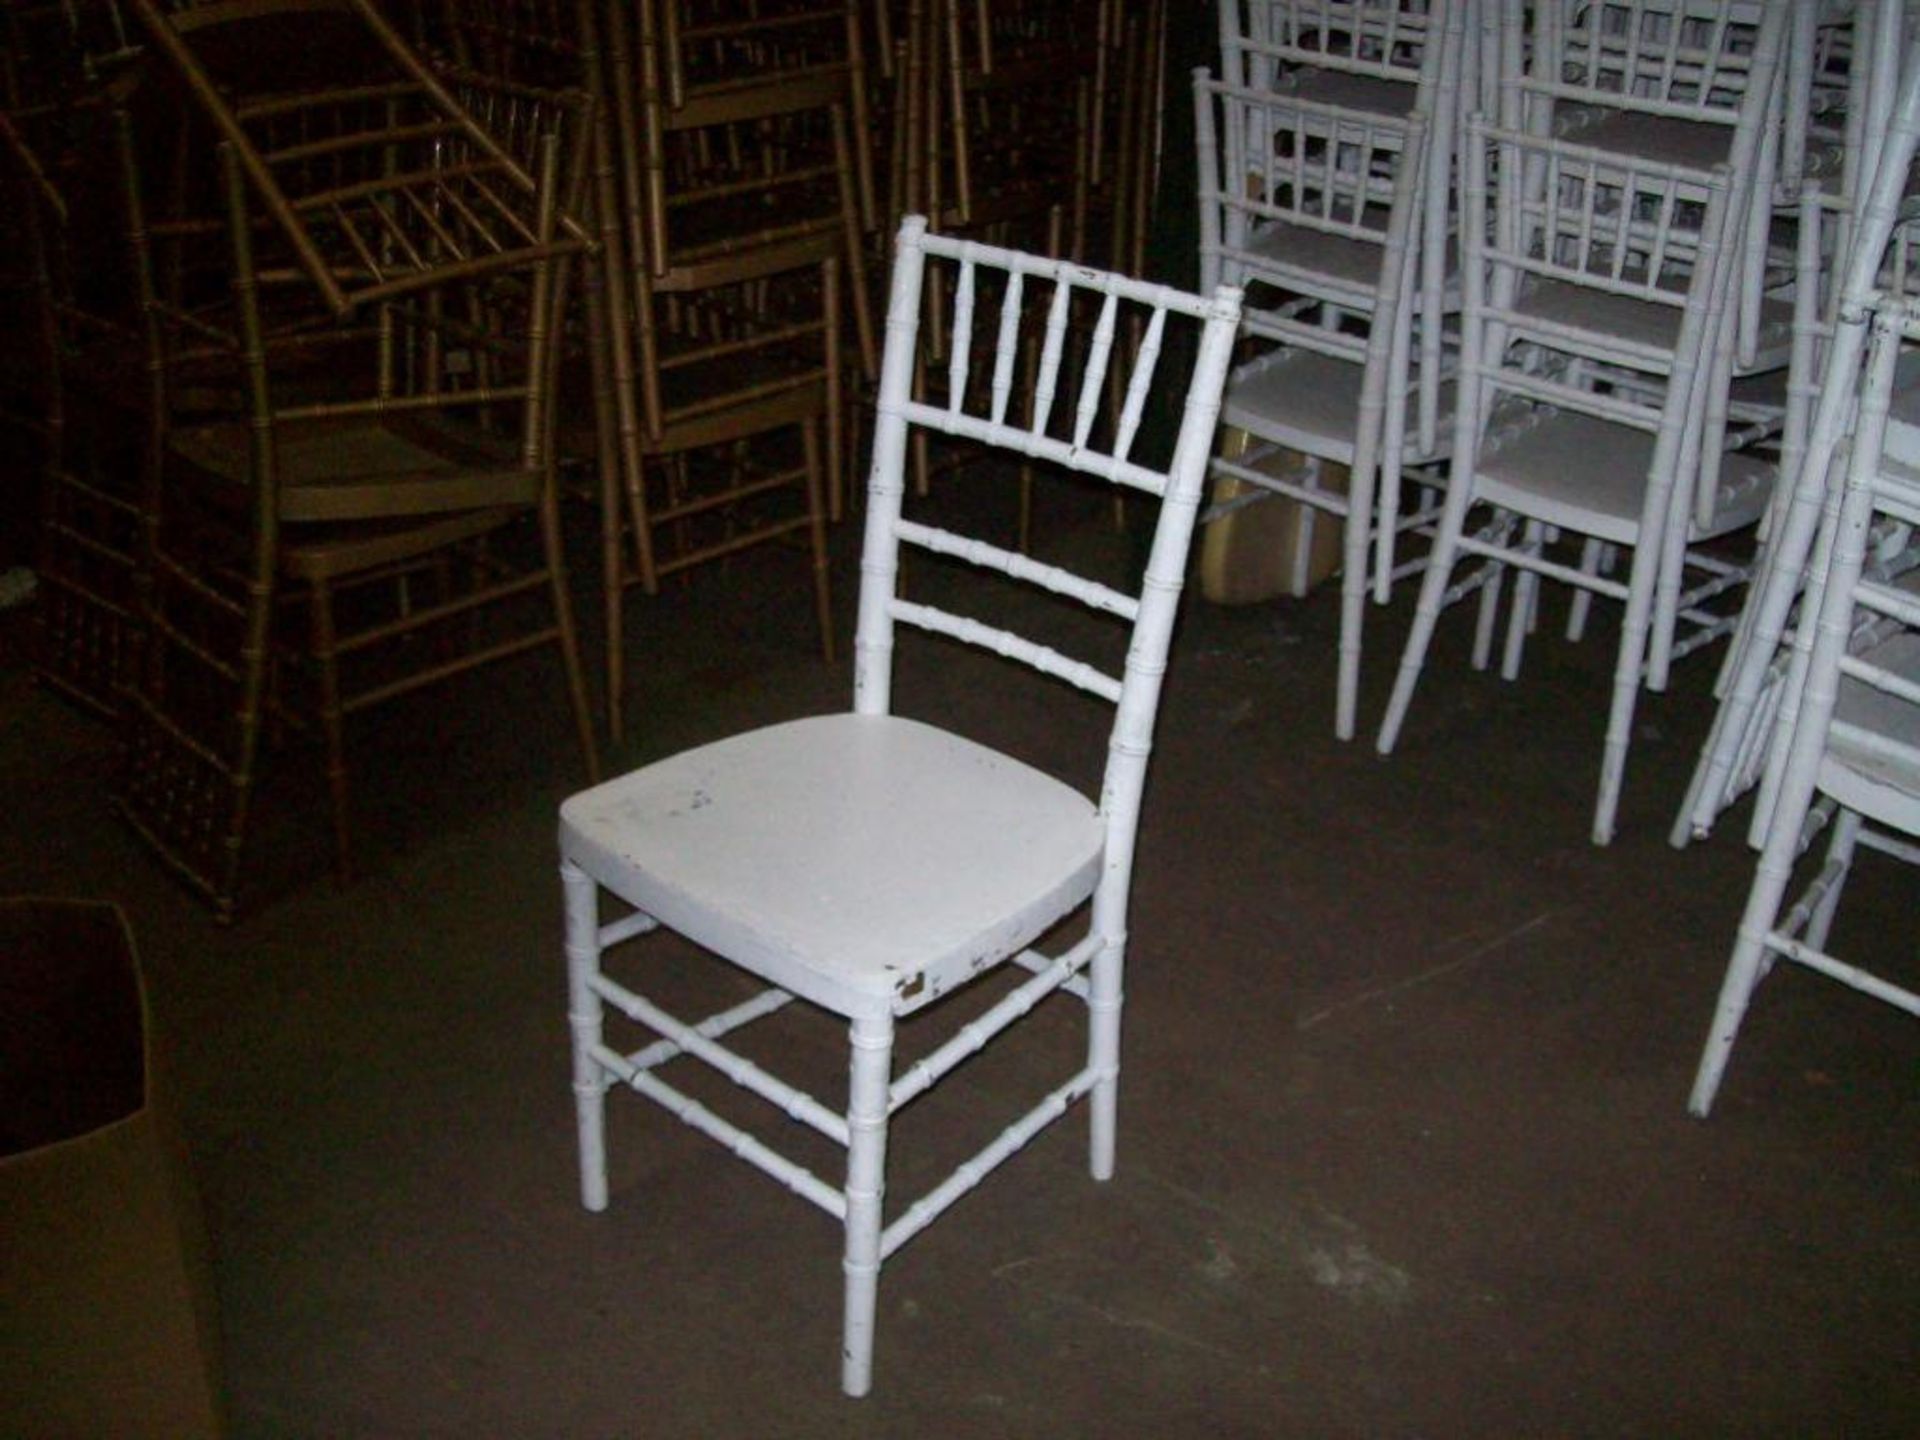 White Chavari chairs